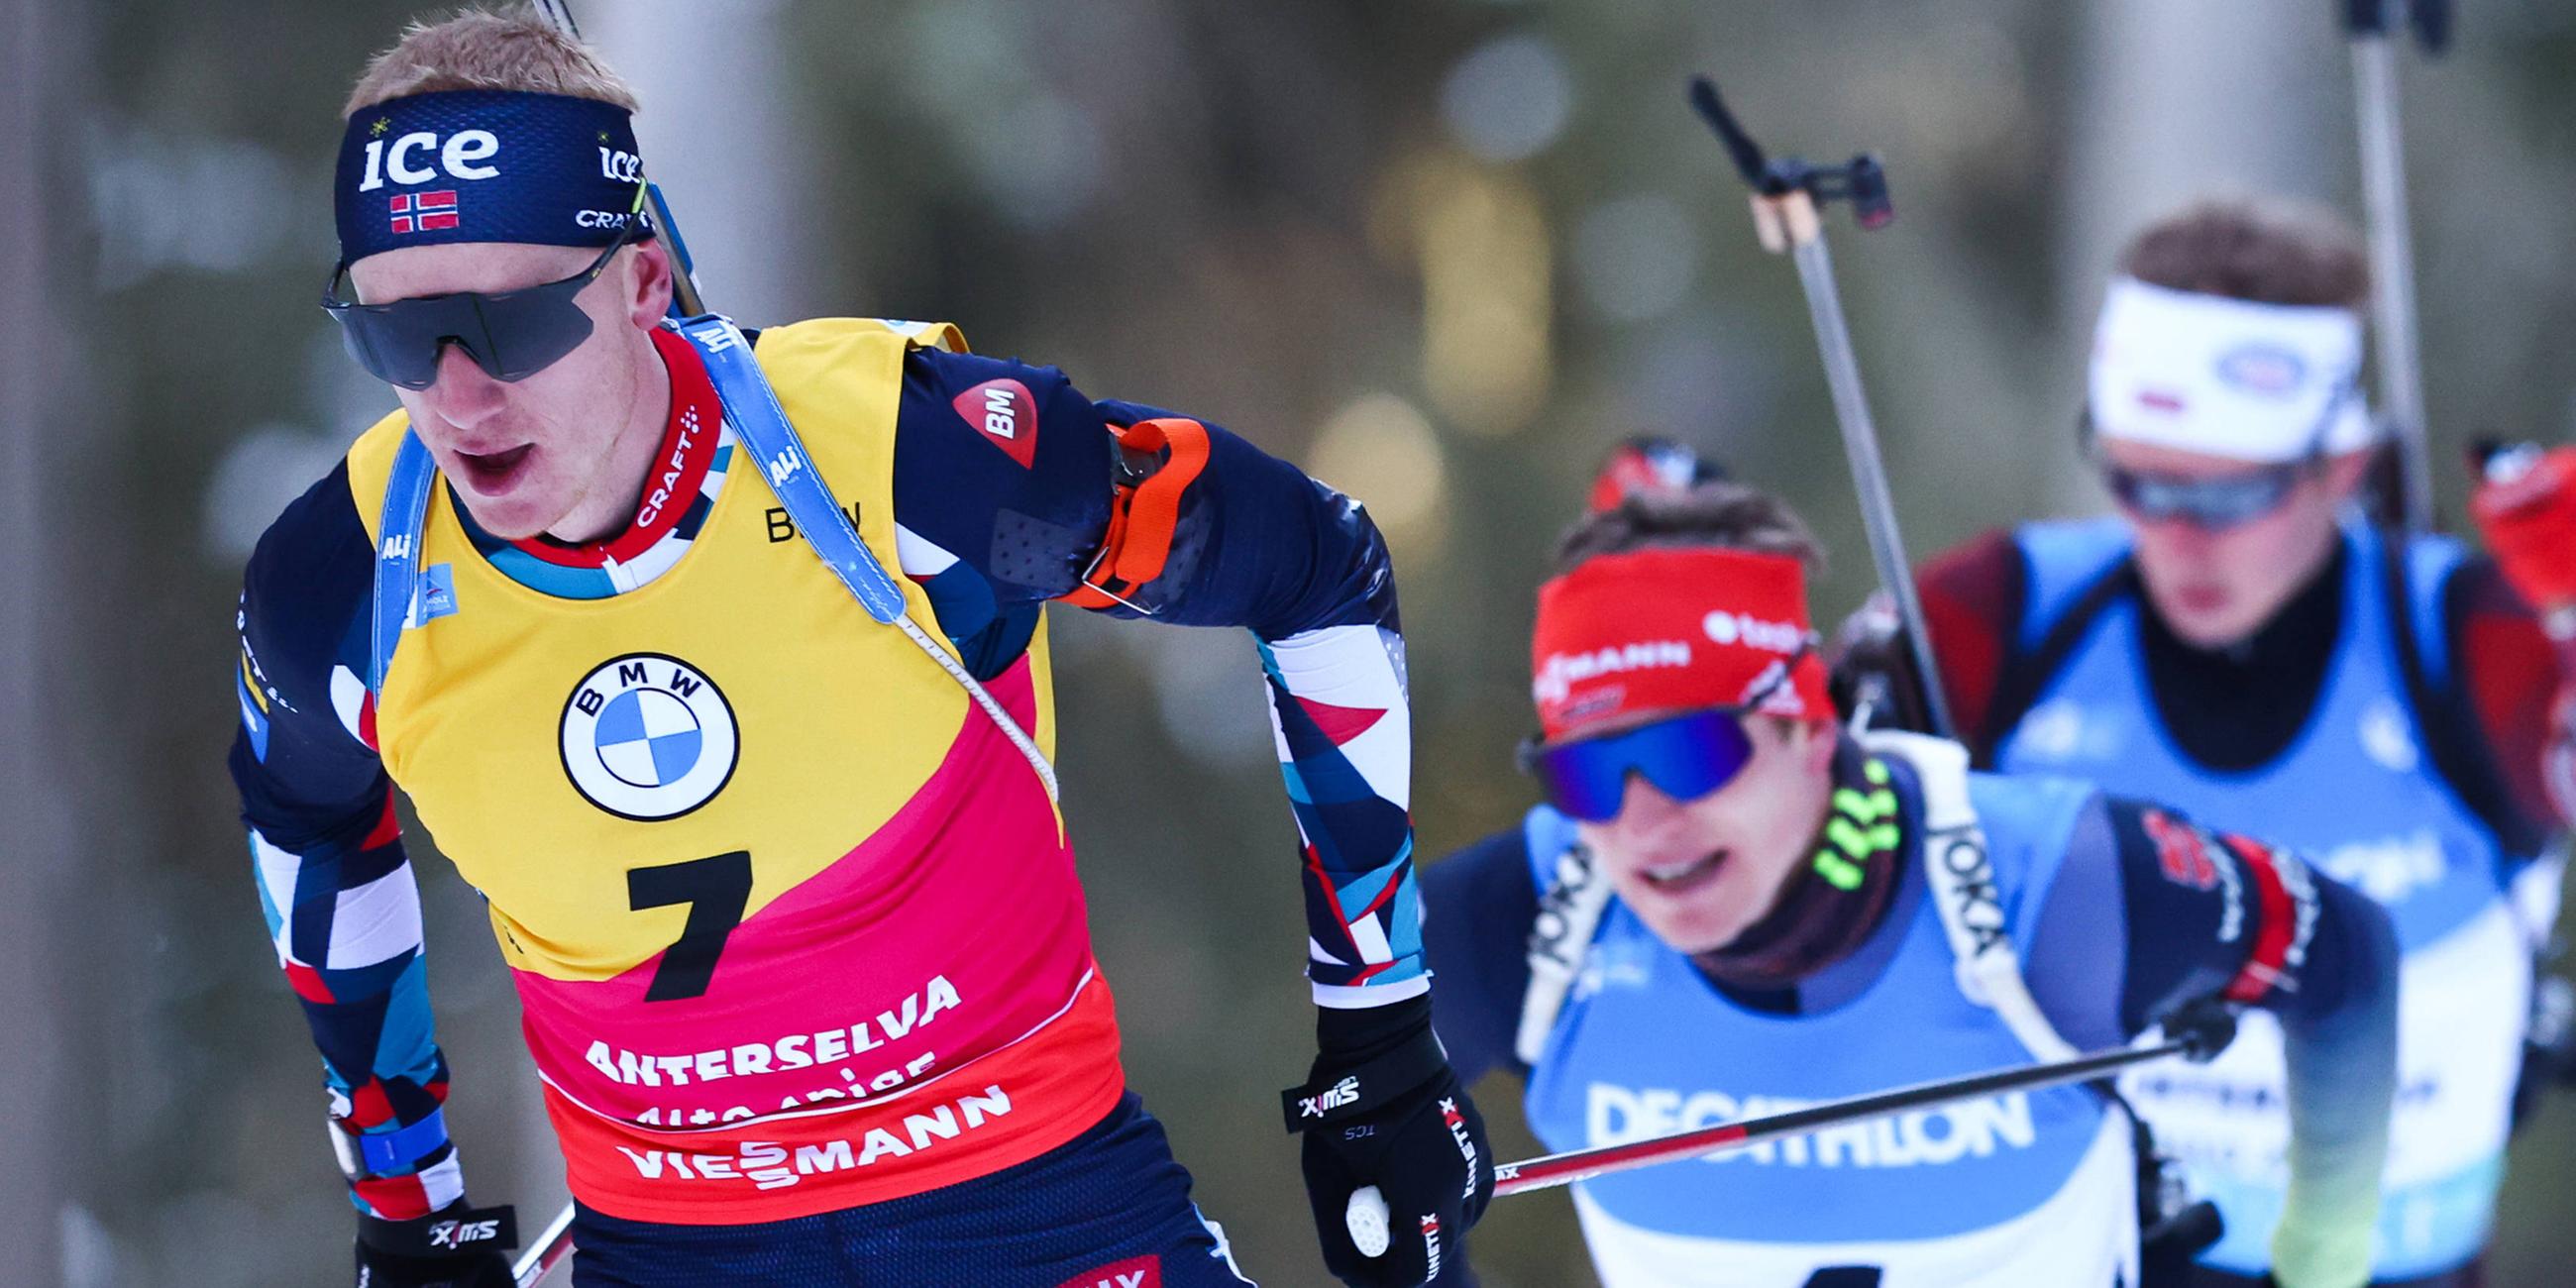 Norweger Johannes Thignes Boe beim Weltcup des Biathlon, 10km der Männer.